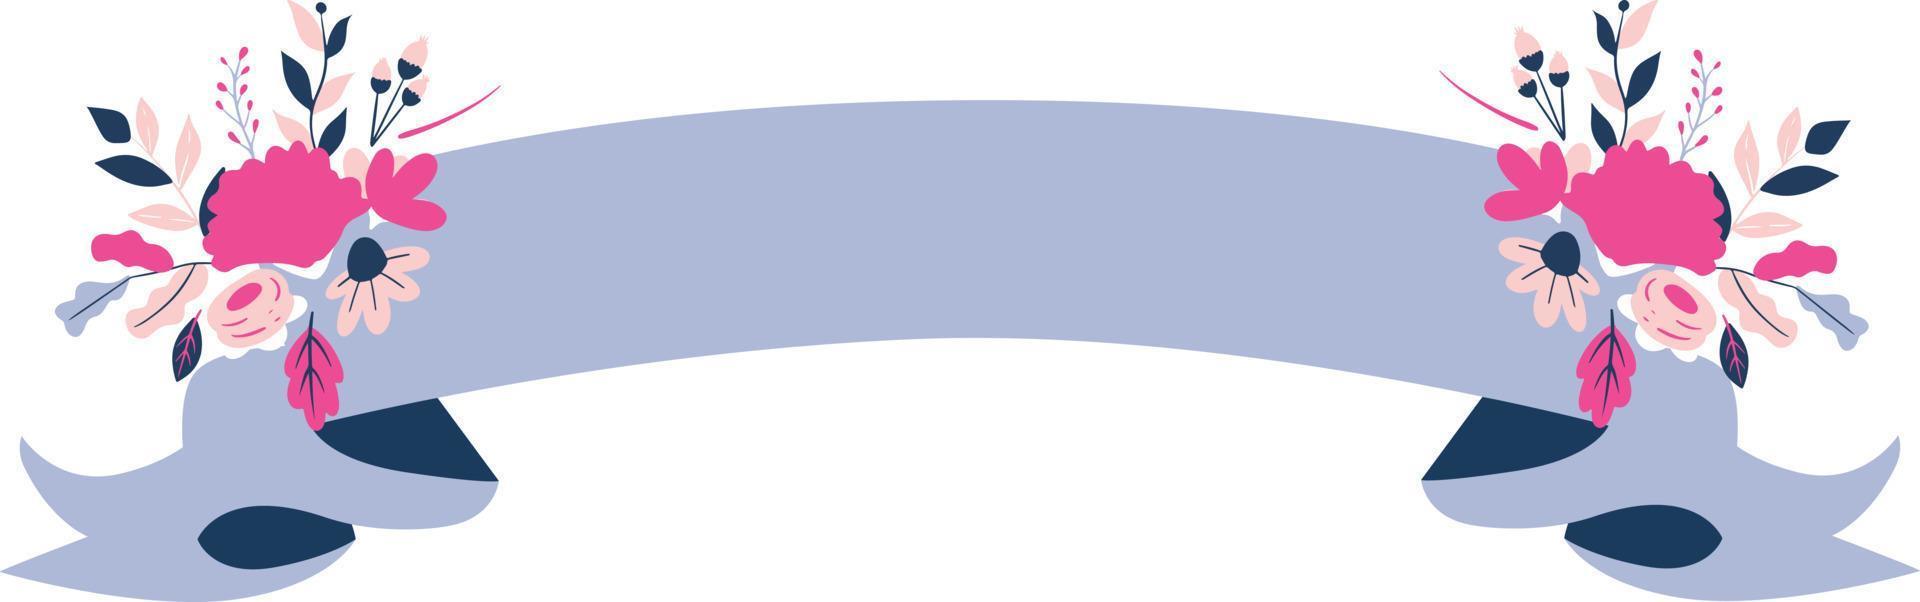 blå band med blomma illustration vektor